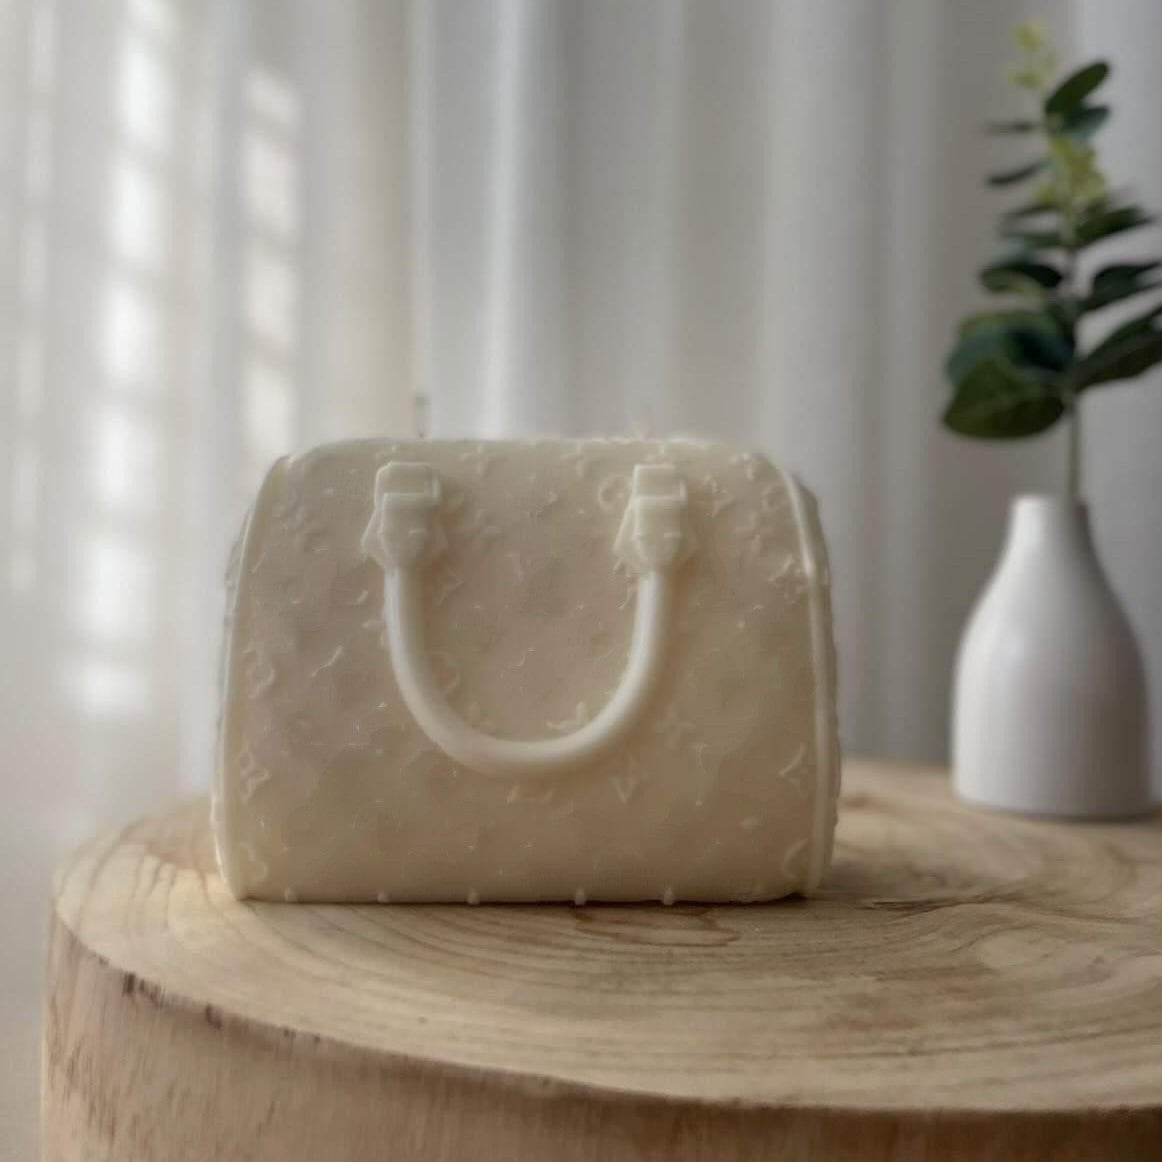 O'Creme Louis Vuitton Bag Silicone Mold